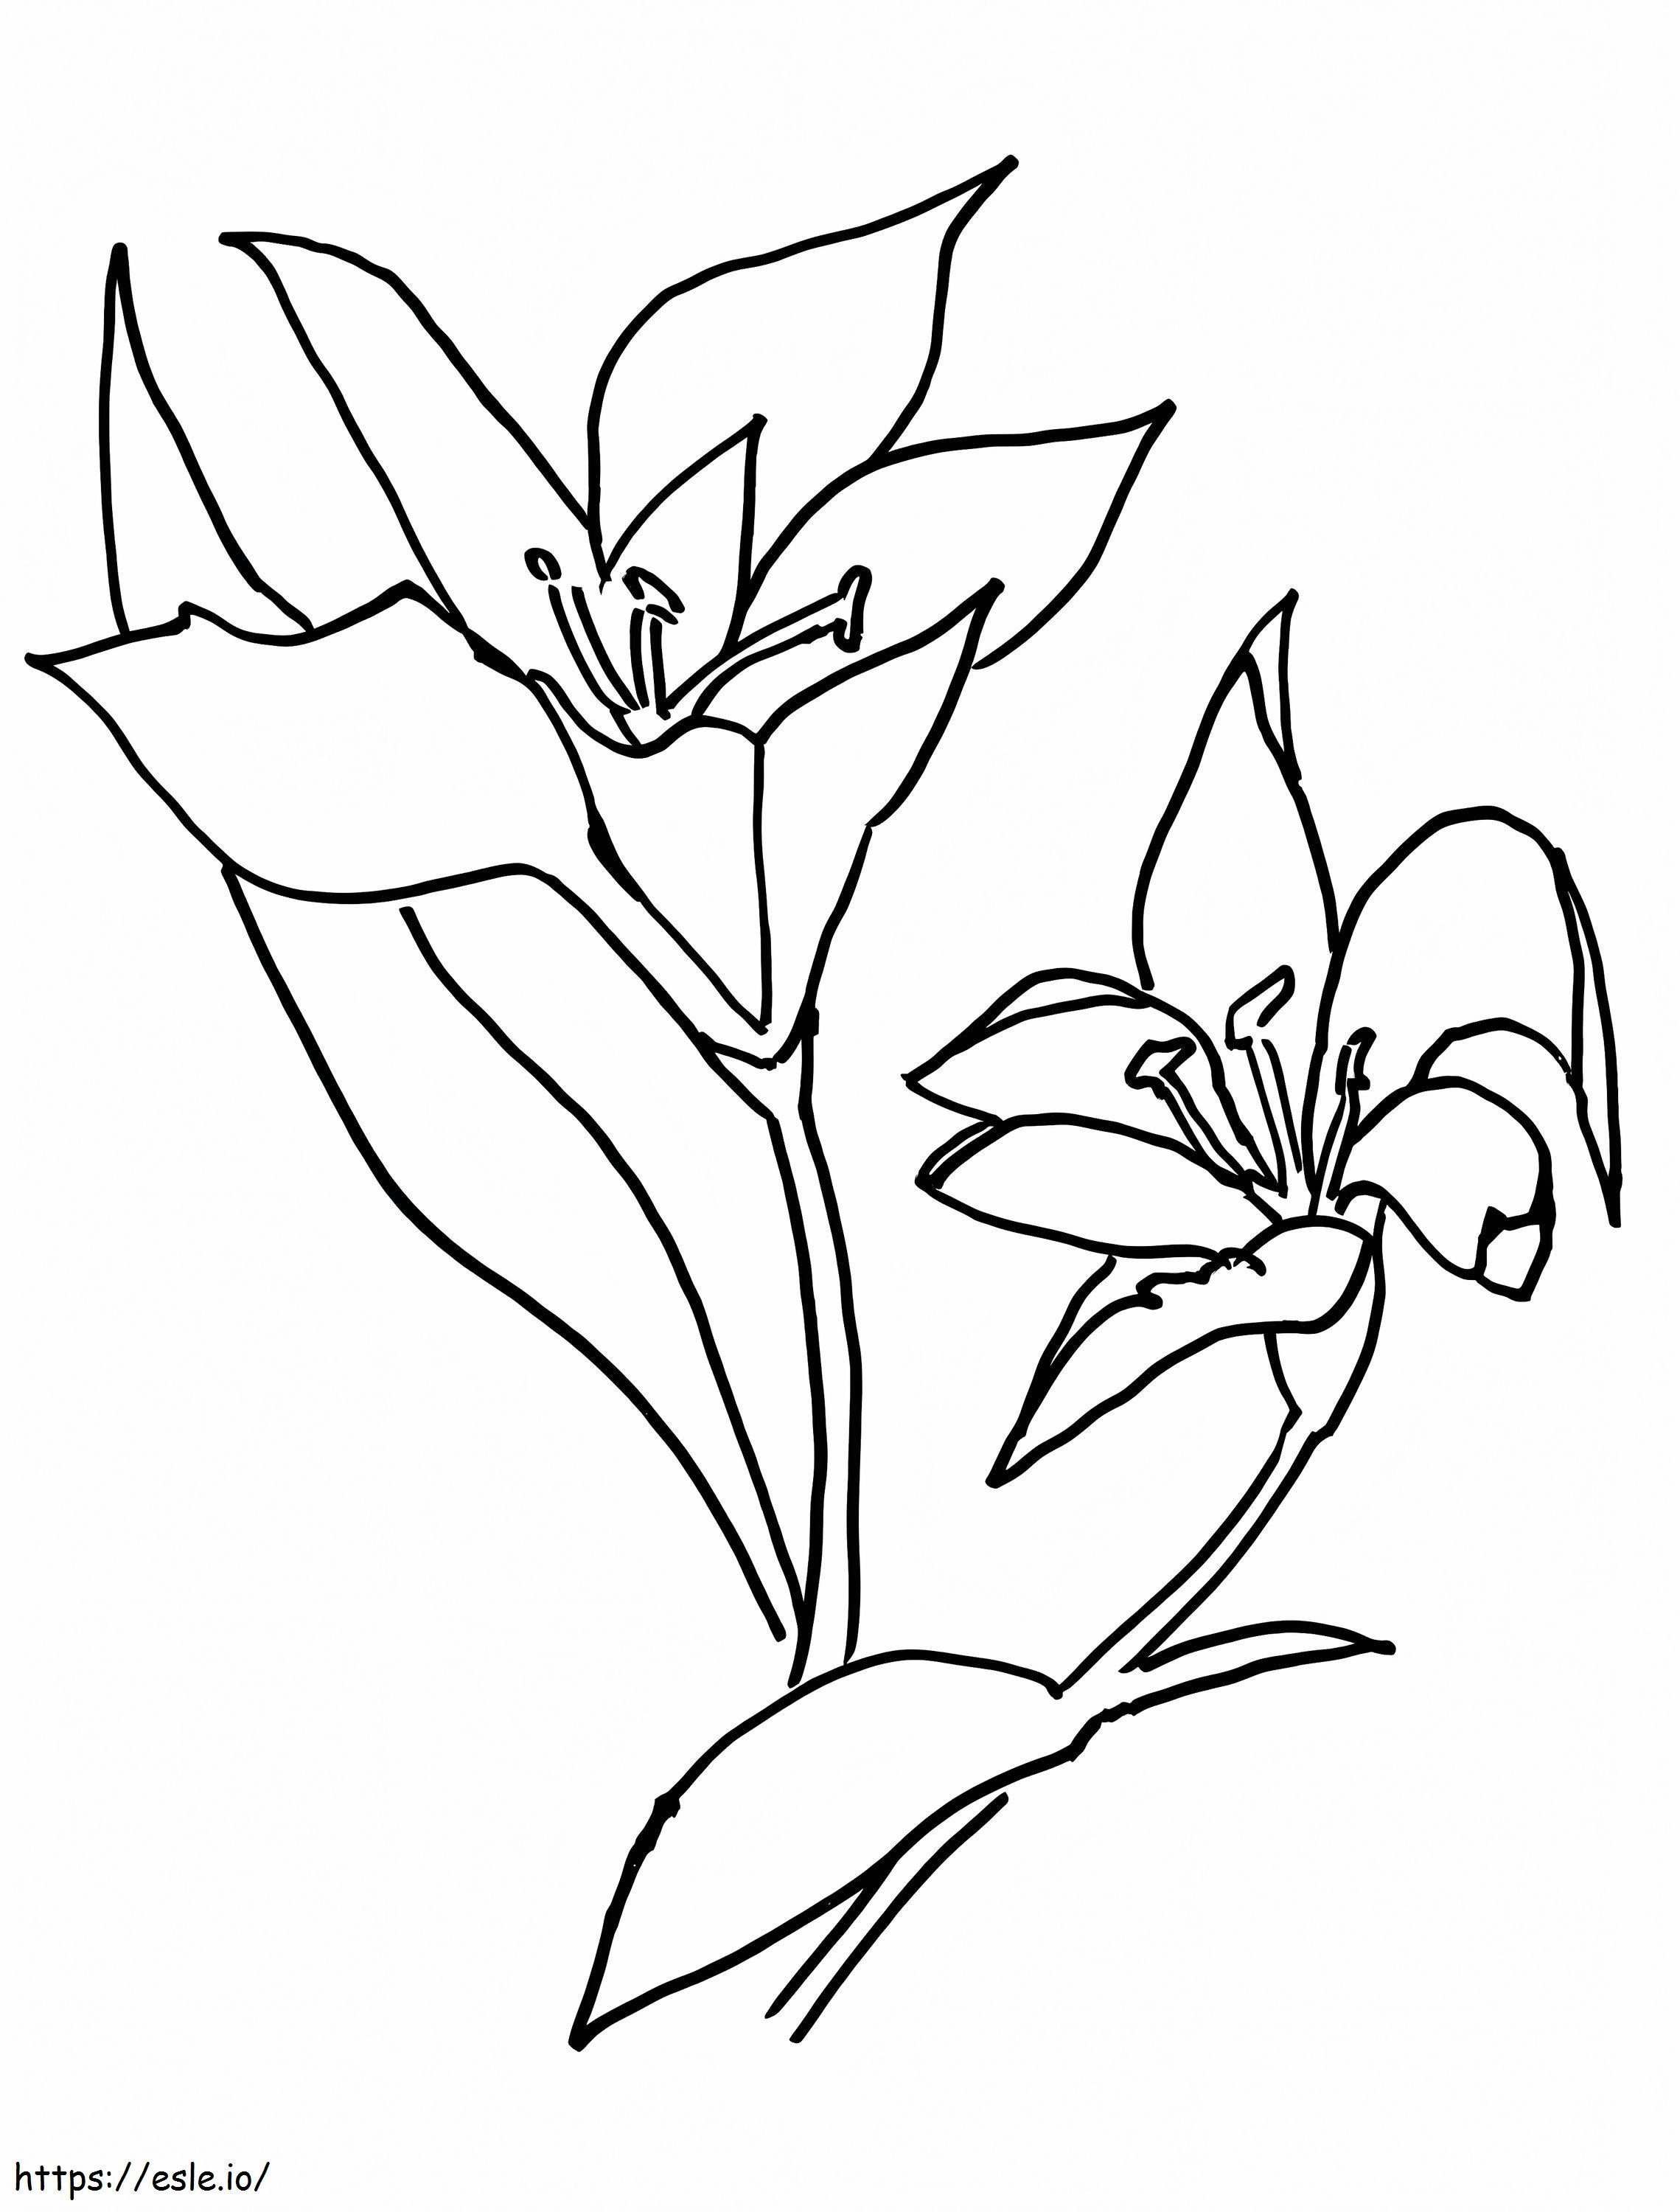 Coloriage Deux fleurs de lys à imprimer dessin